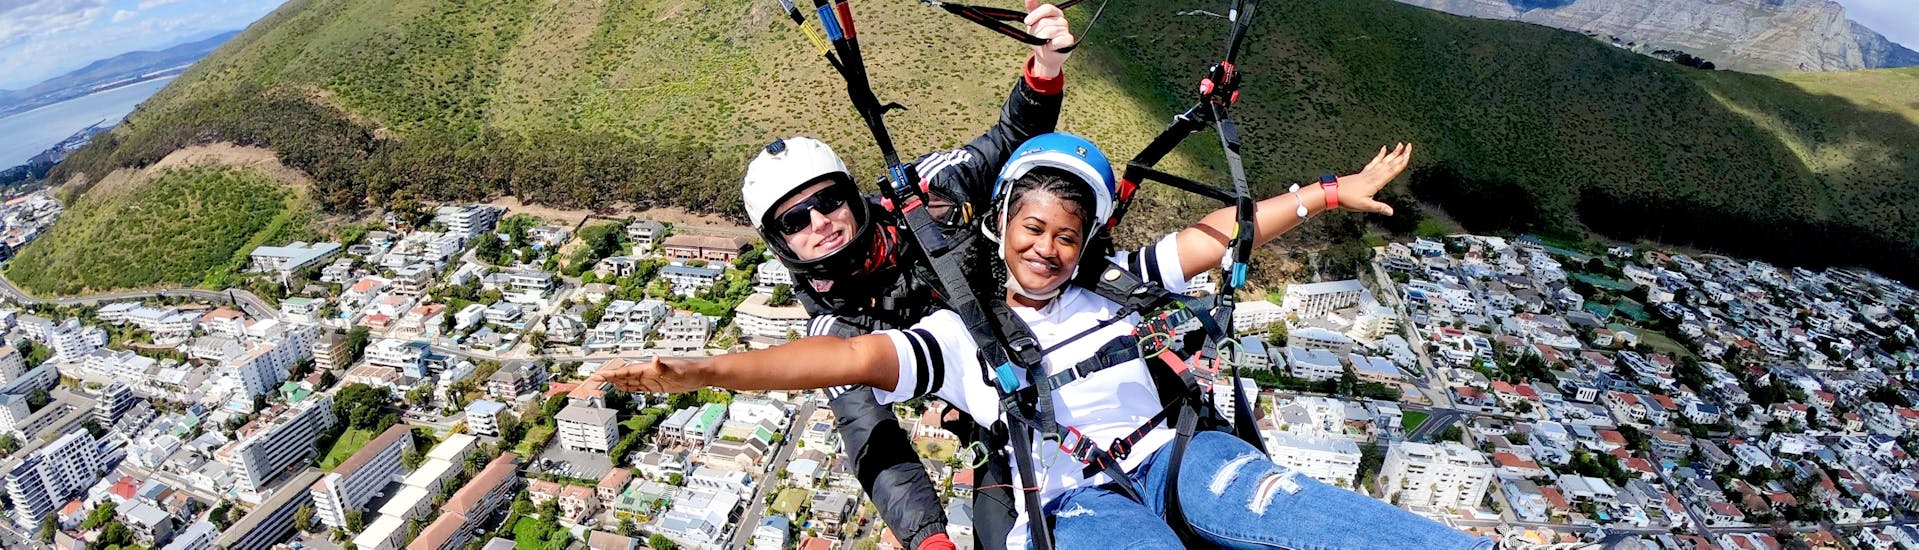 Volo acrobatico in parapendio biposto a Città del Capo (da 15 anni) - Signal Hill.